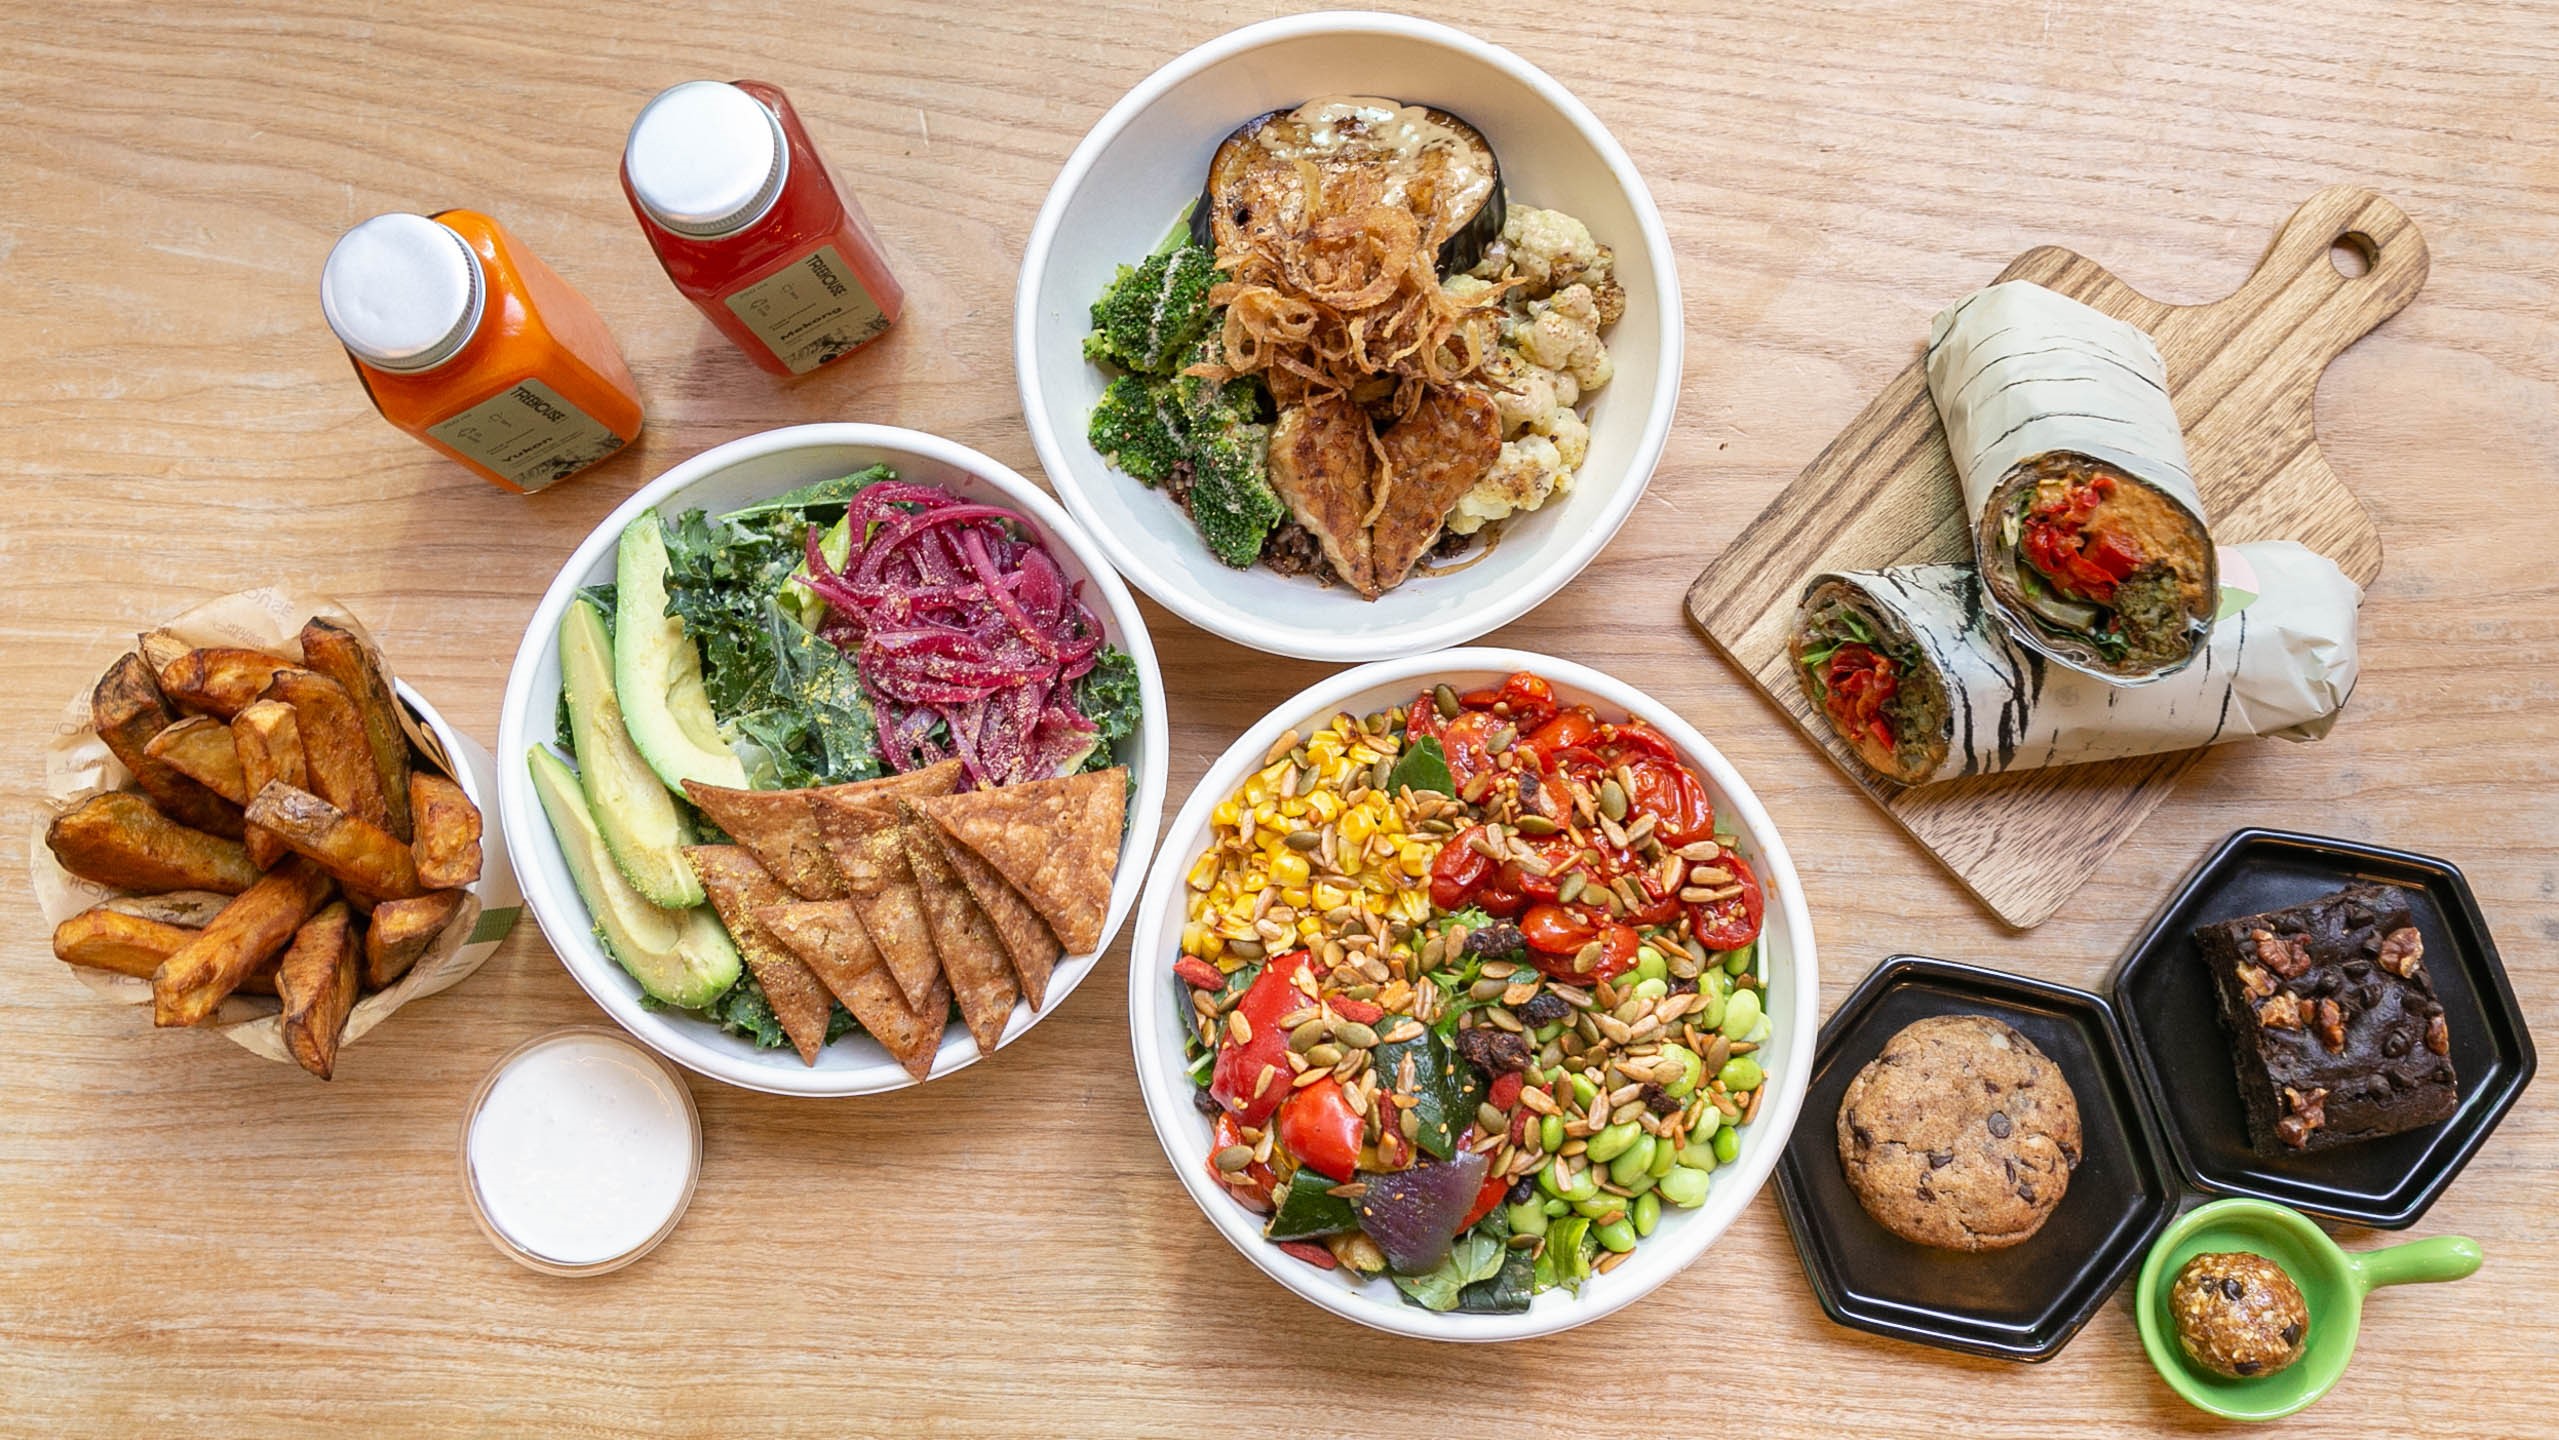 【美食】全植物飲食餐廳 選用天然環保食材